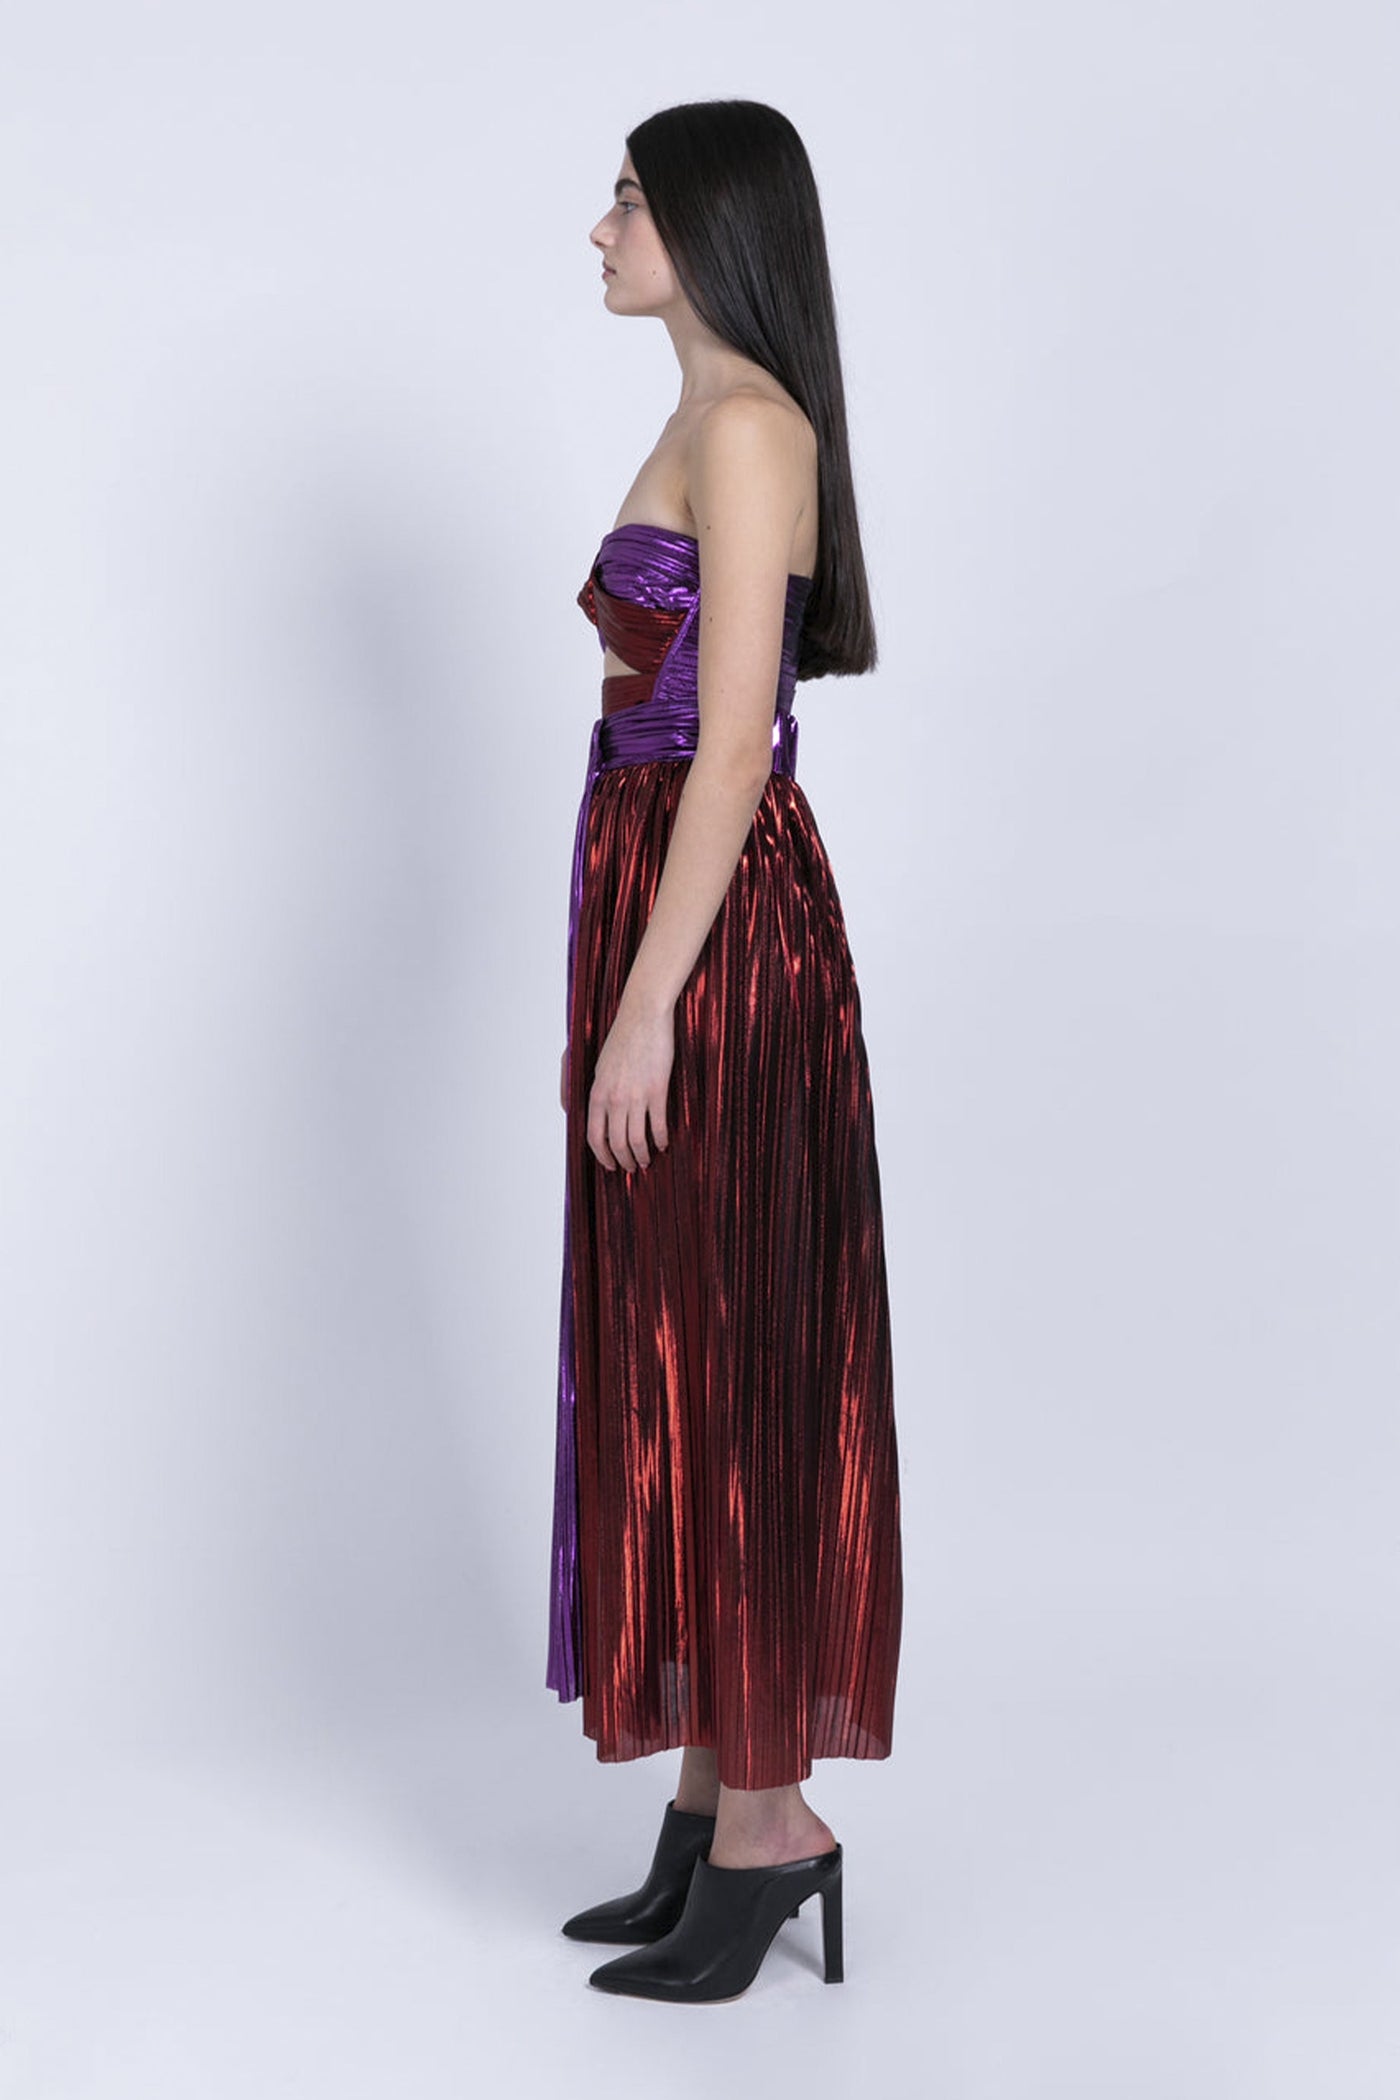 Sabina Musayev Faina Skirt - Multi Coloured